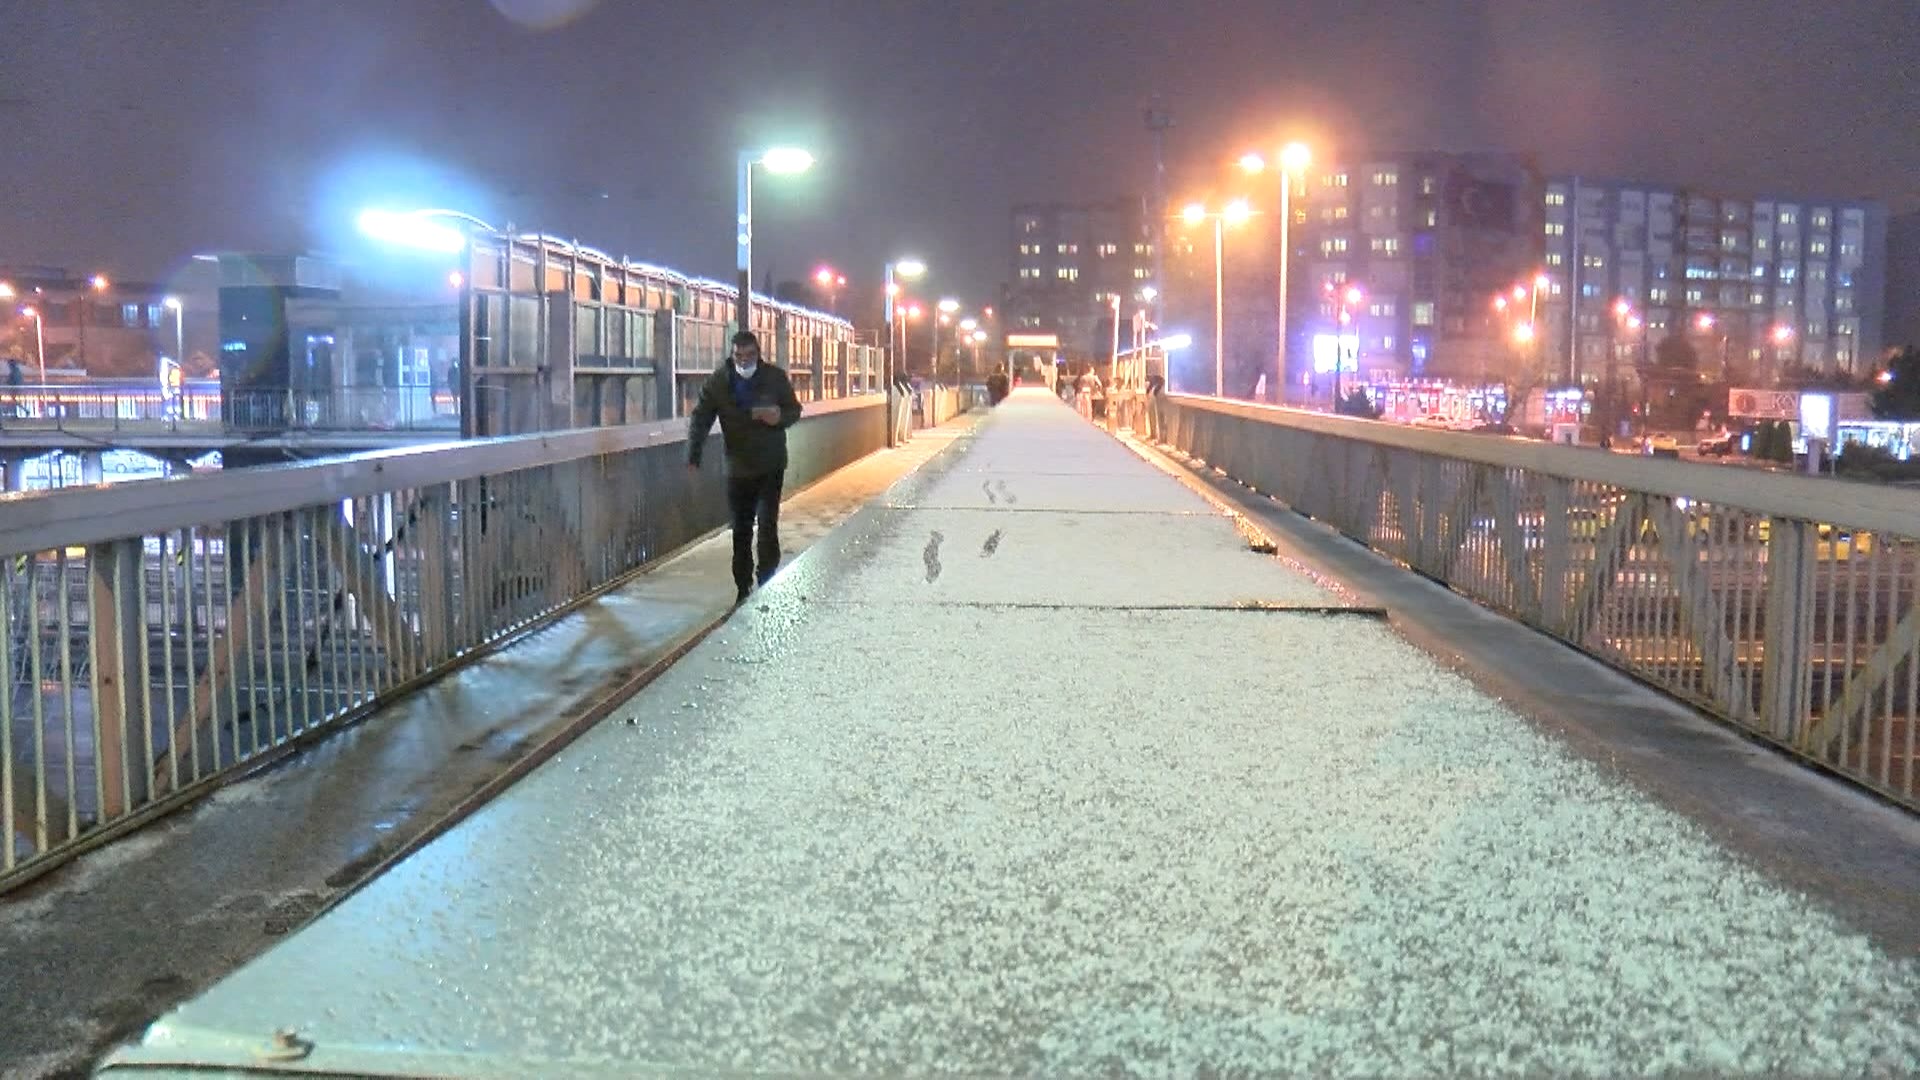 İstanbulda beklenen kar yağışı gece saatlerinde başladı | İşte ilk görüntüler